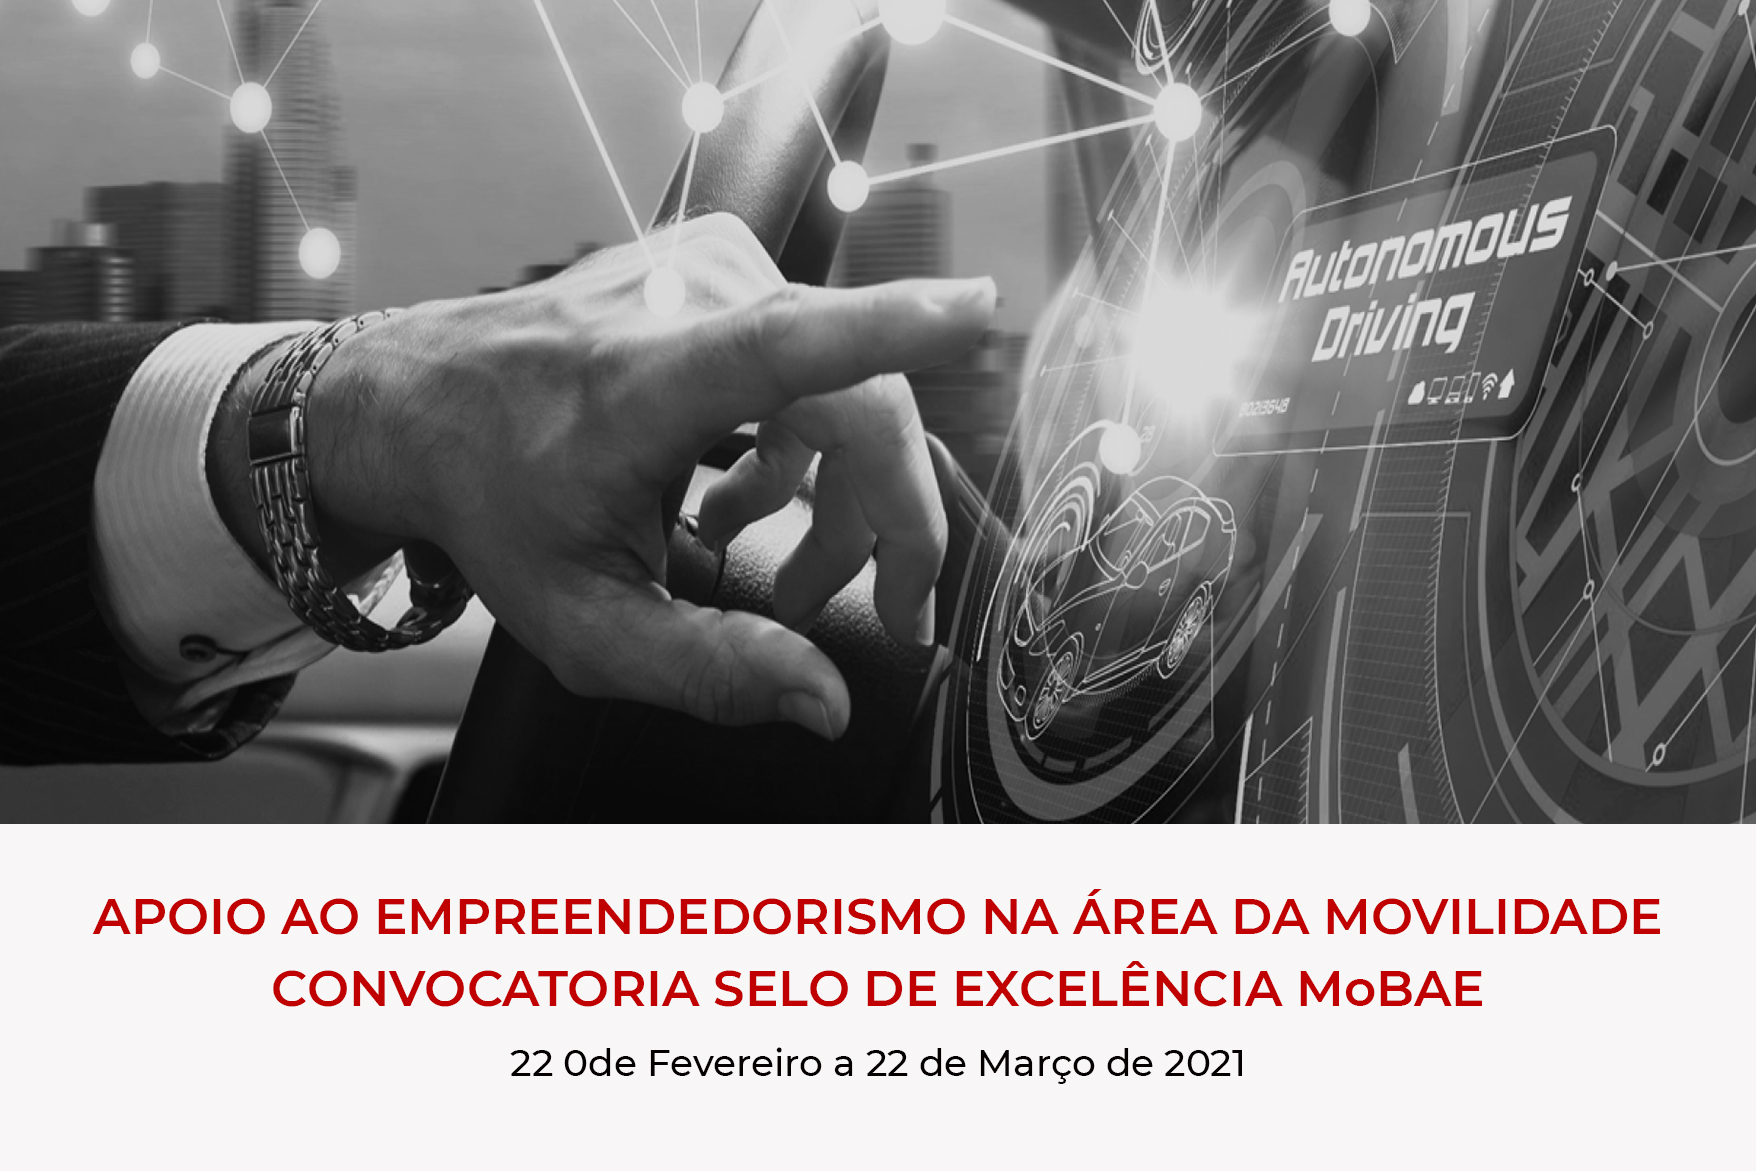 mobae_convocatoria_empreendedorismo_movilidade_pt